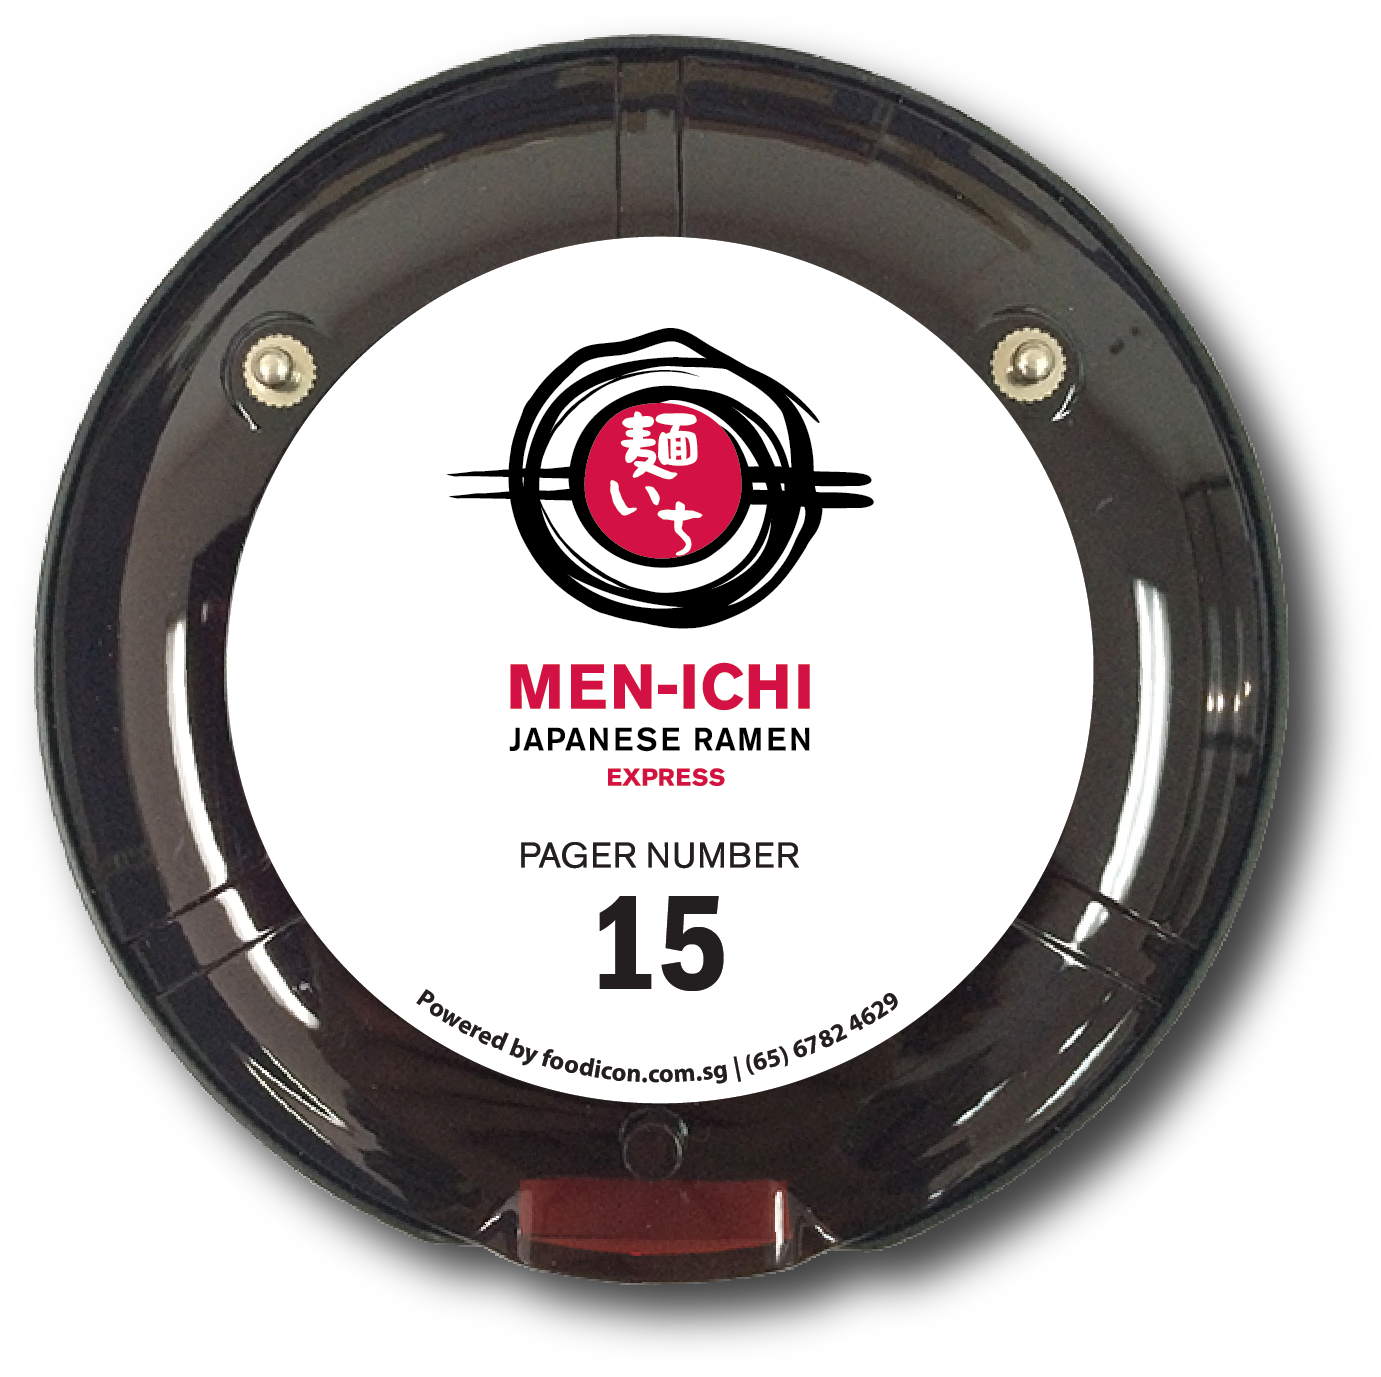 Food Icon Paging System - Men-ichi Ramen Express